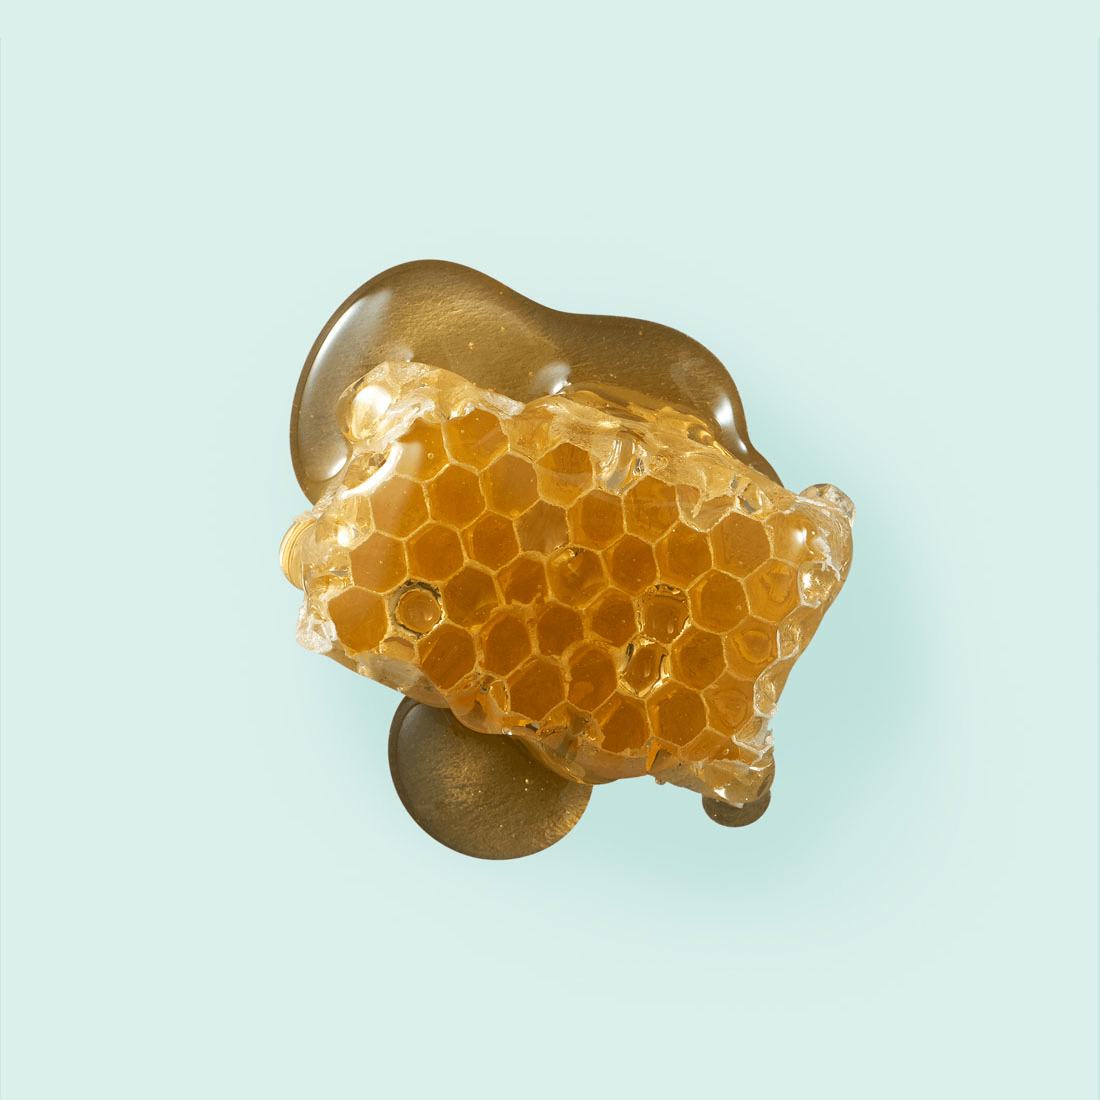 Cera de abeja: ¿Qué es y cuáles son sus beneficios?